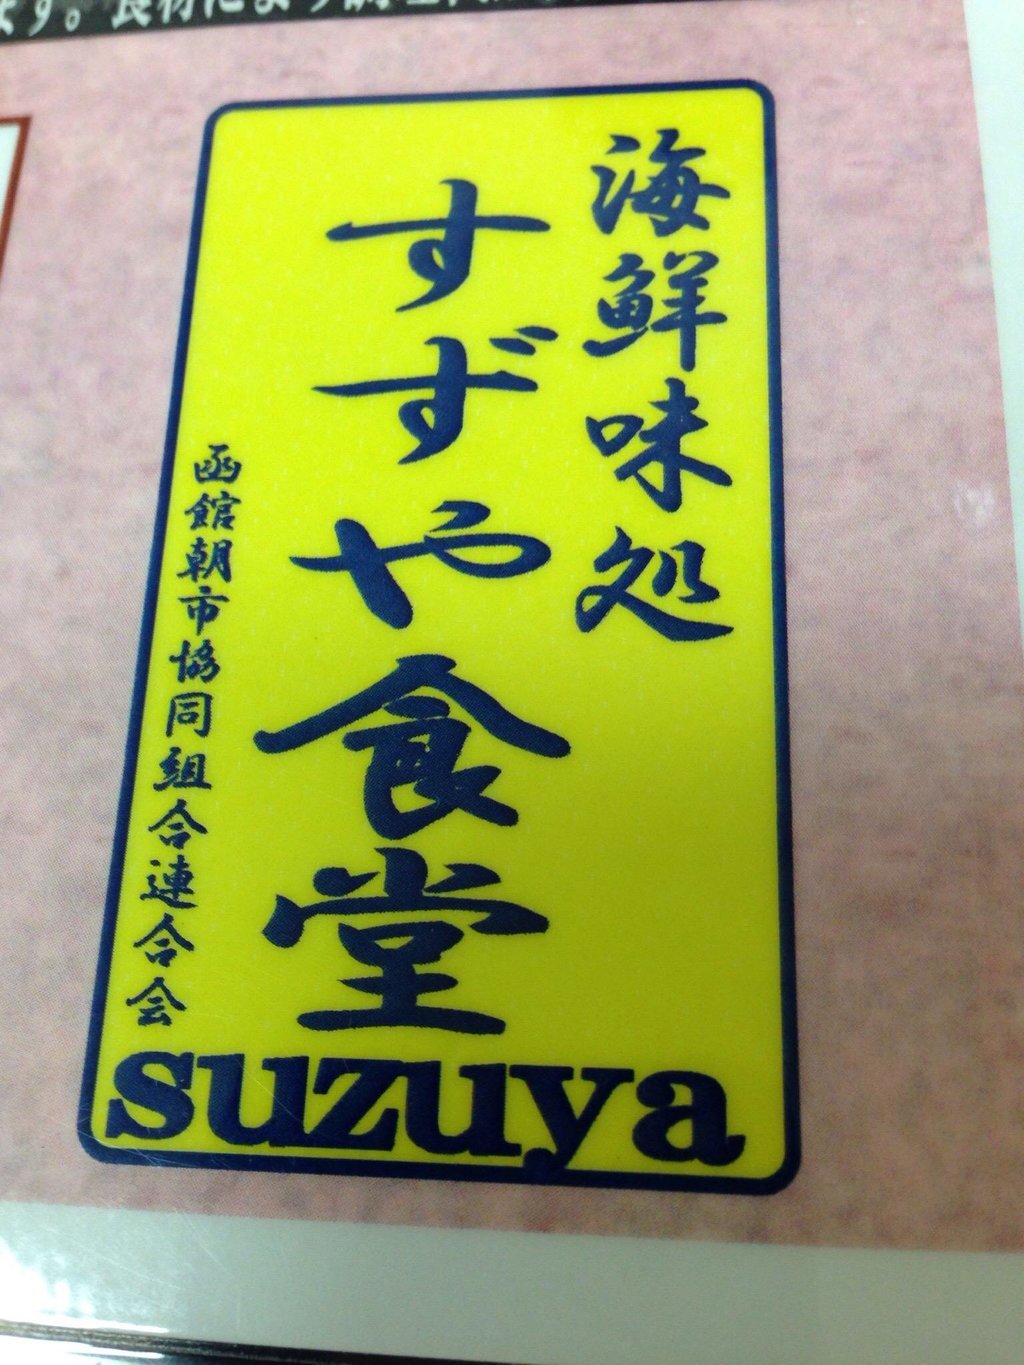 Suzuya Dining